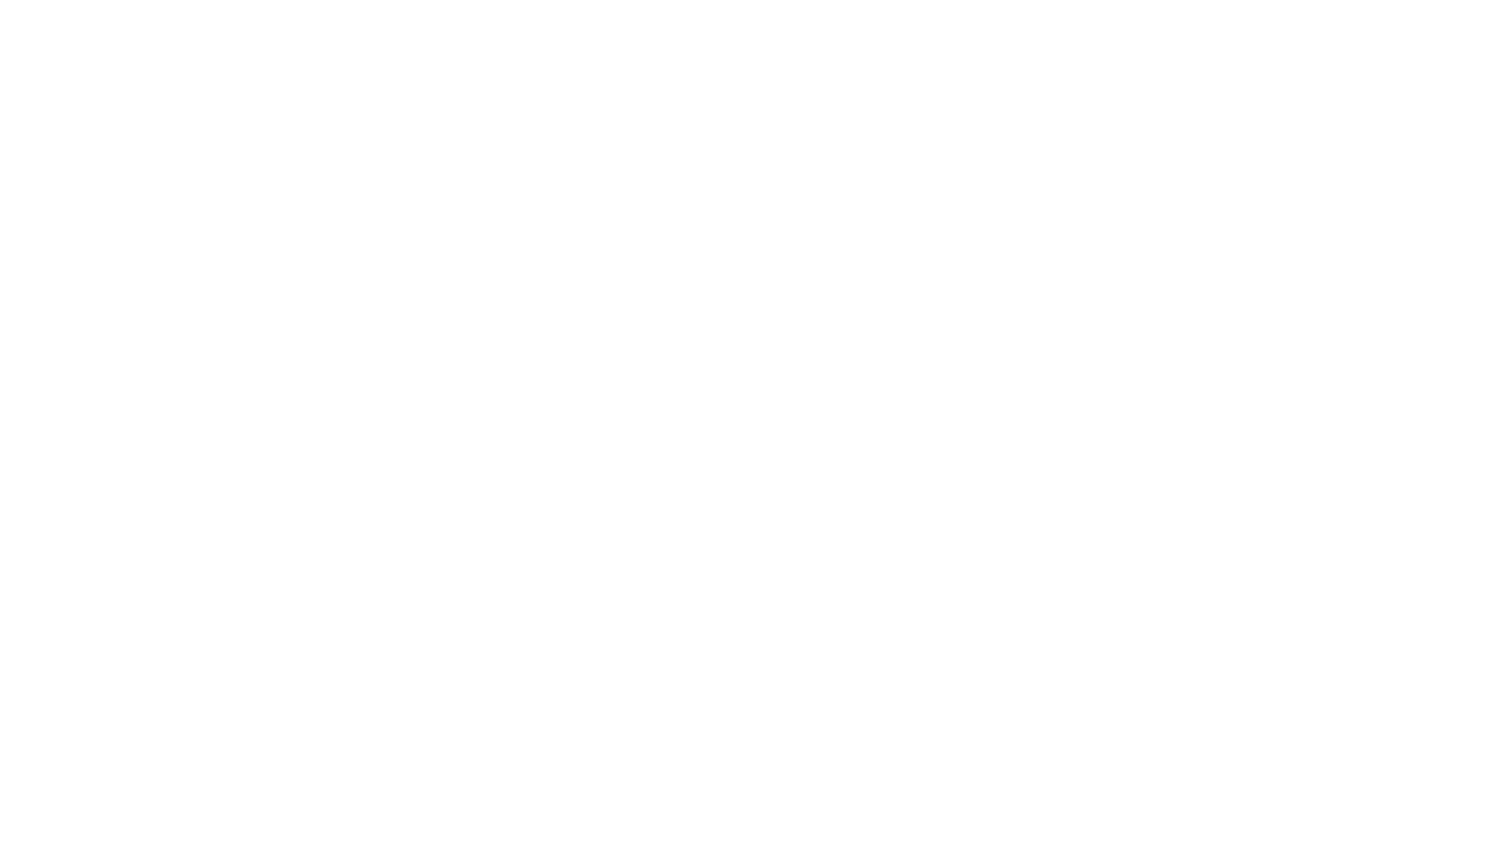 www.KyleKinch.com